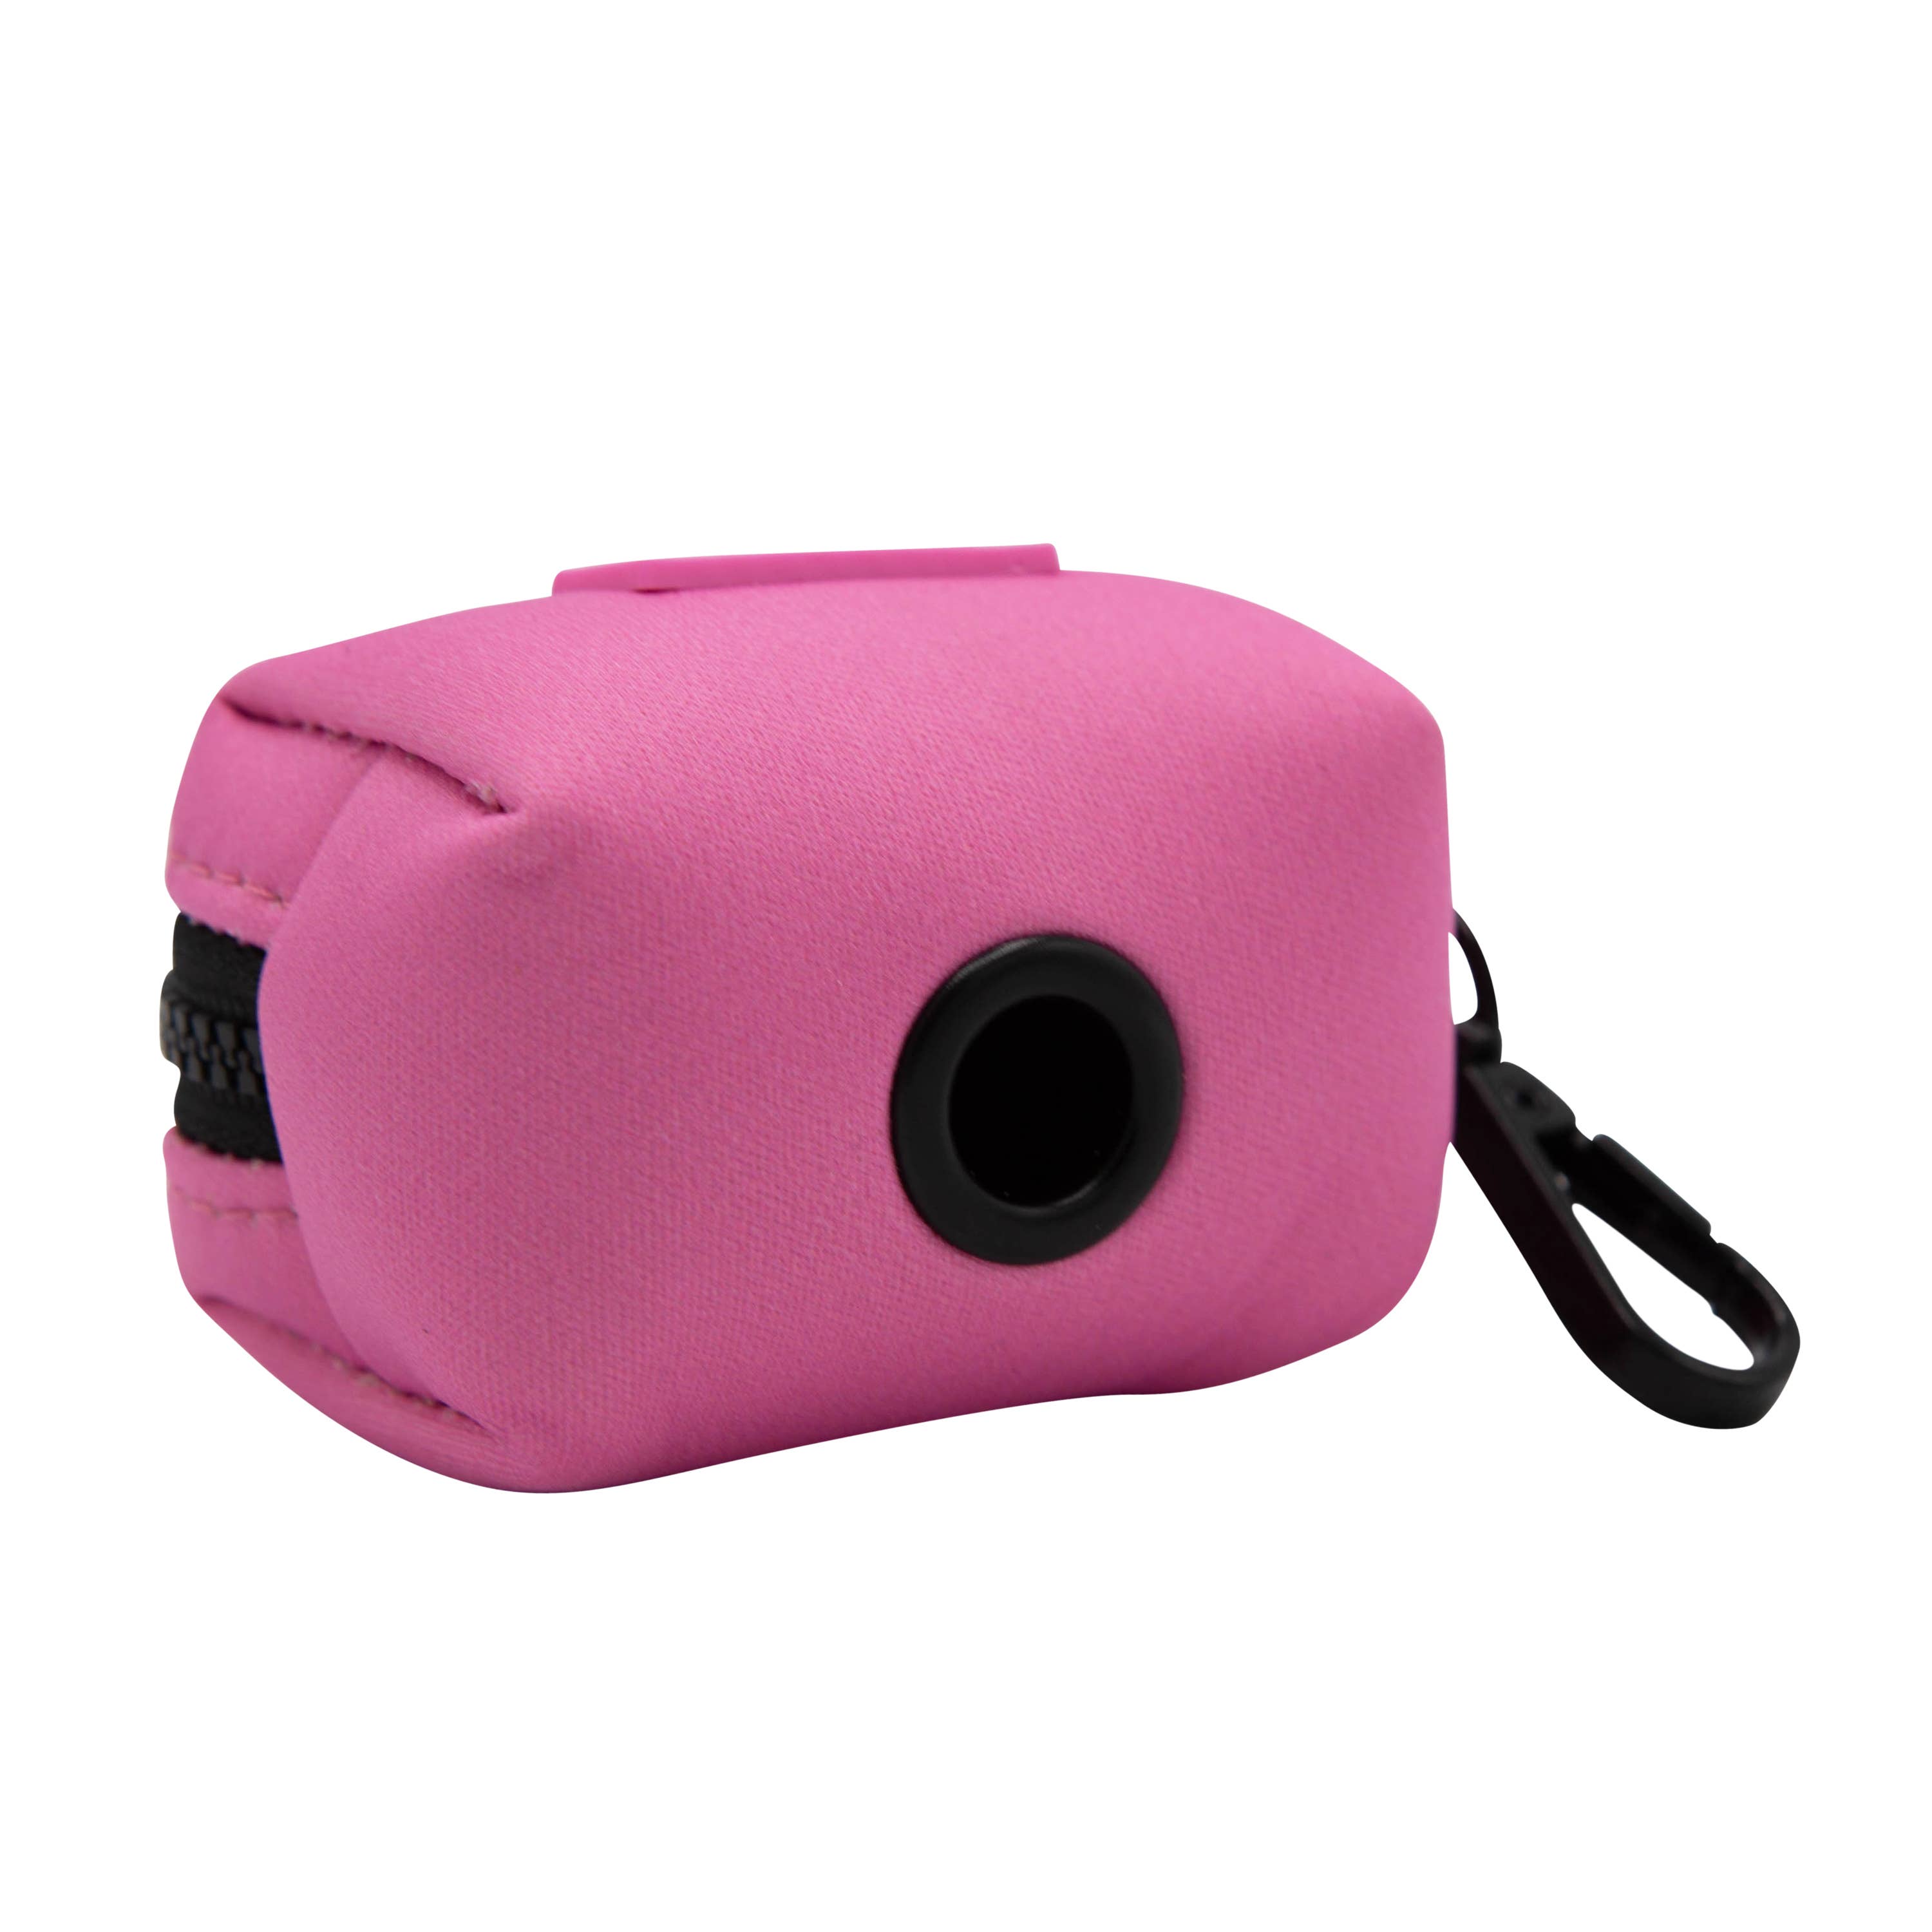 SASSY WOOF - Waste Bag Holder - Pink